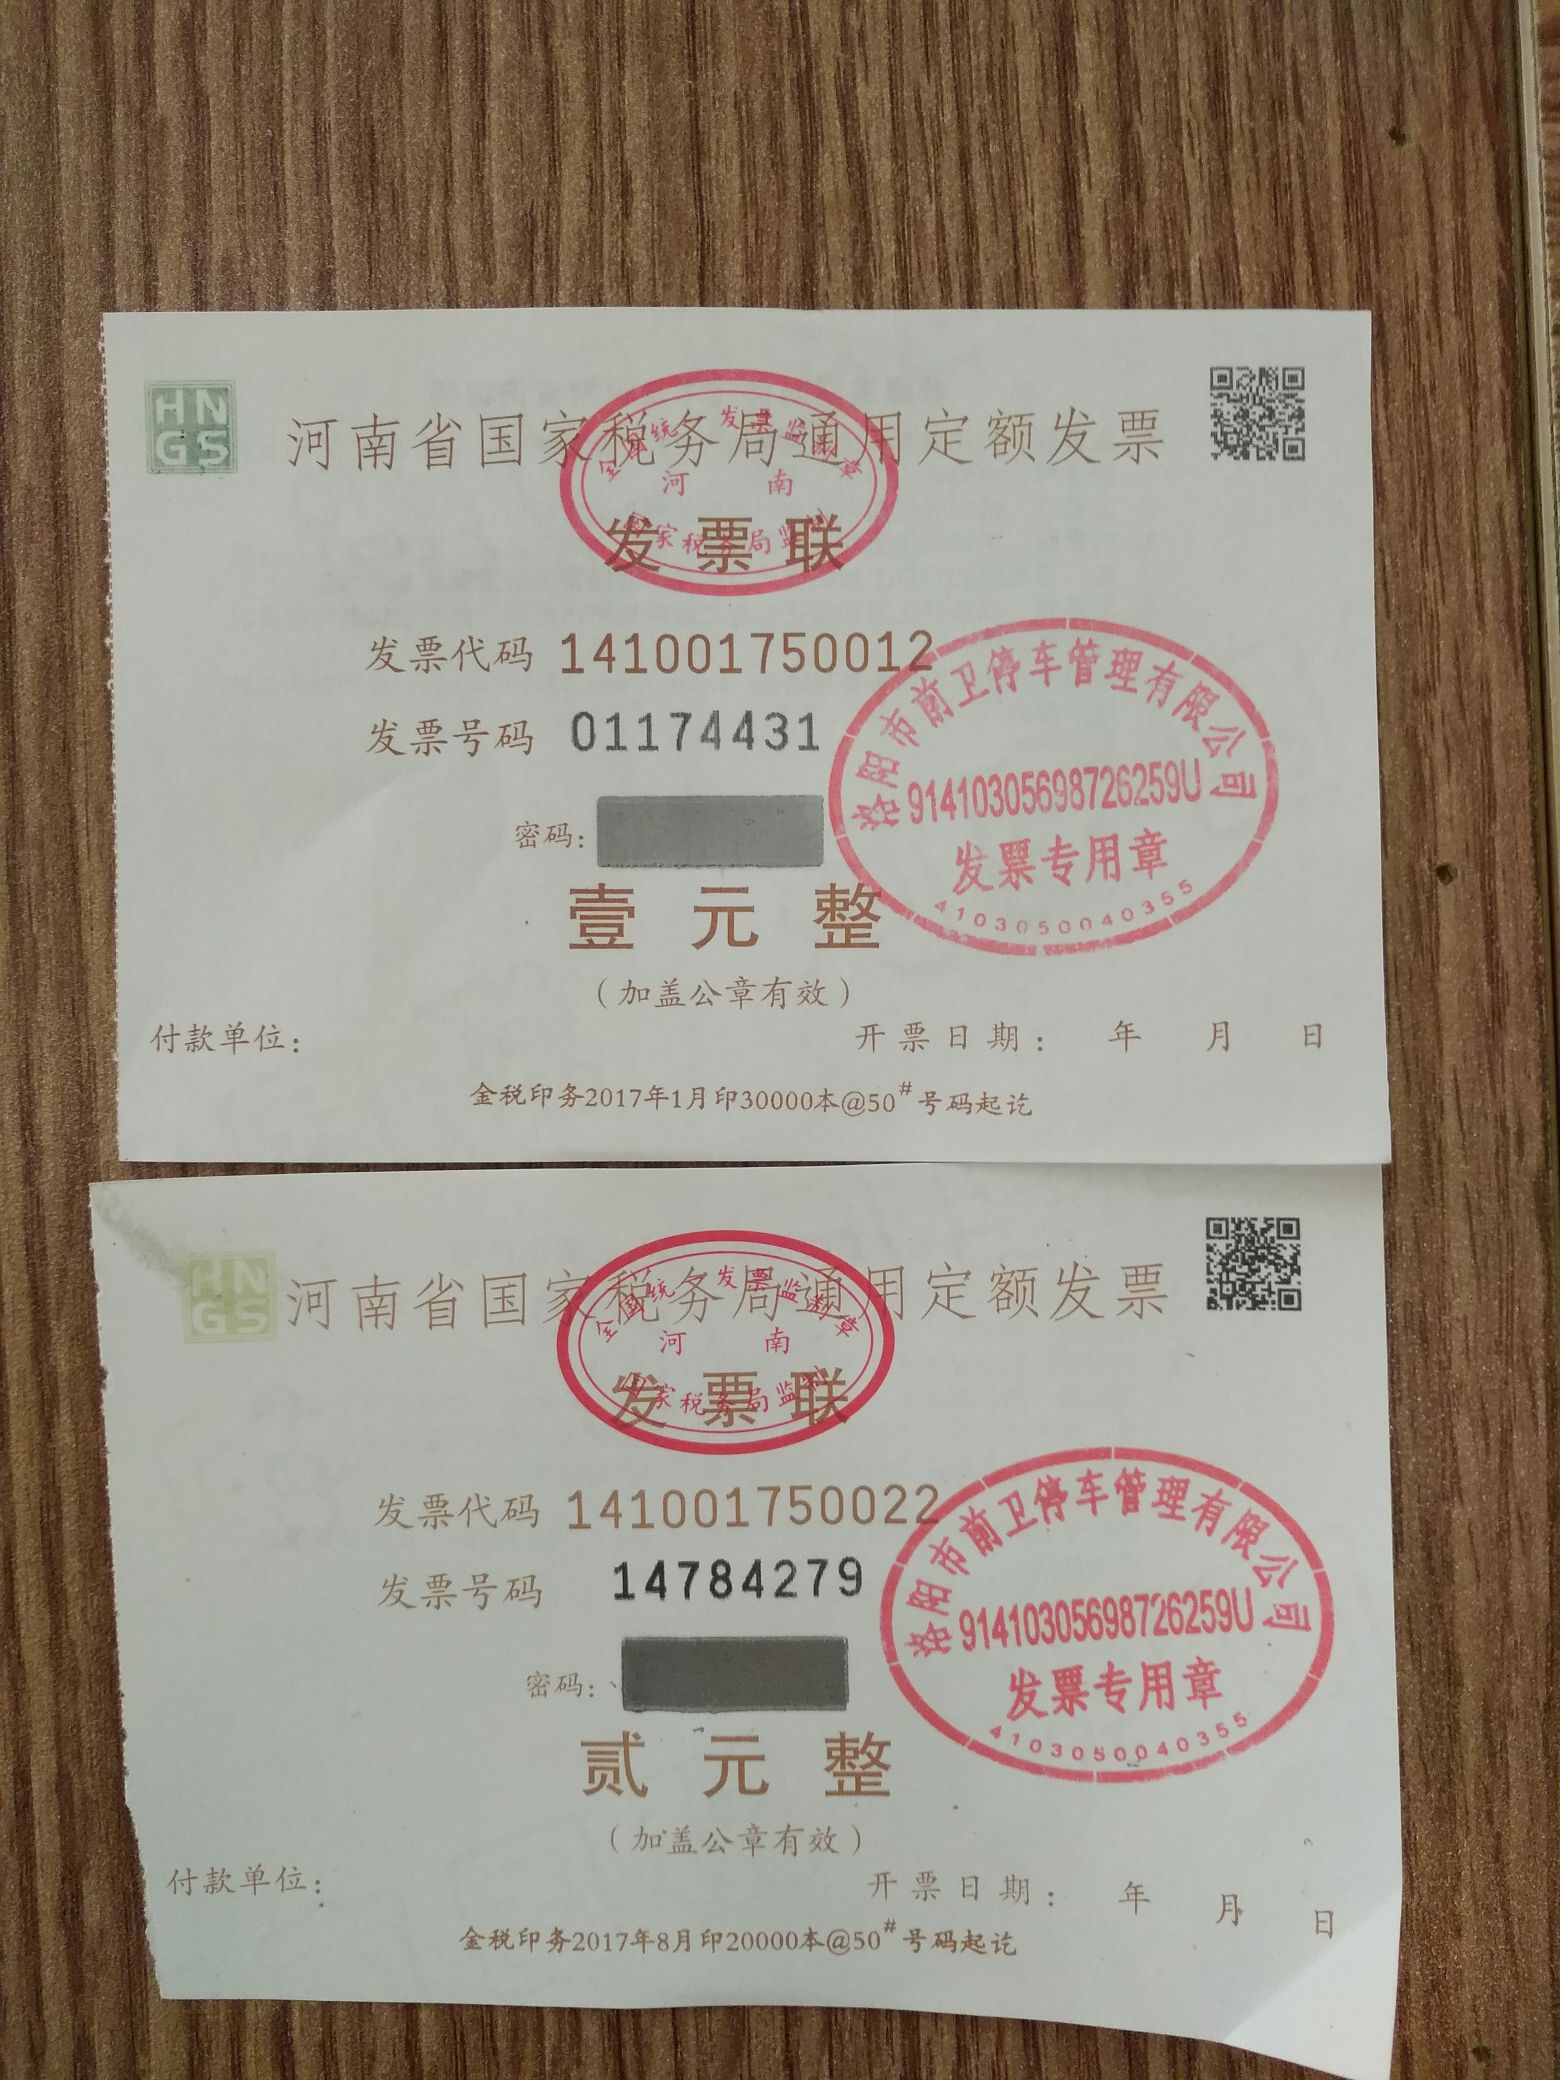 上海市场附近路边停车还需要收停车费吗